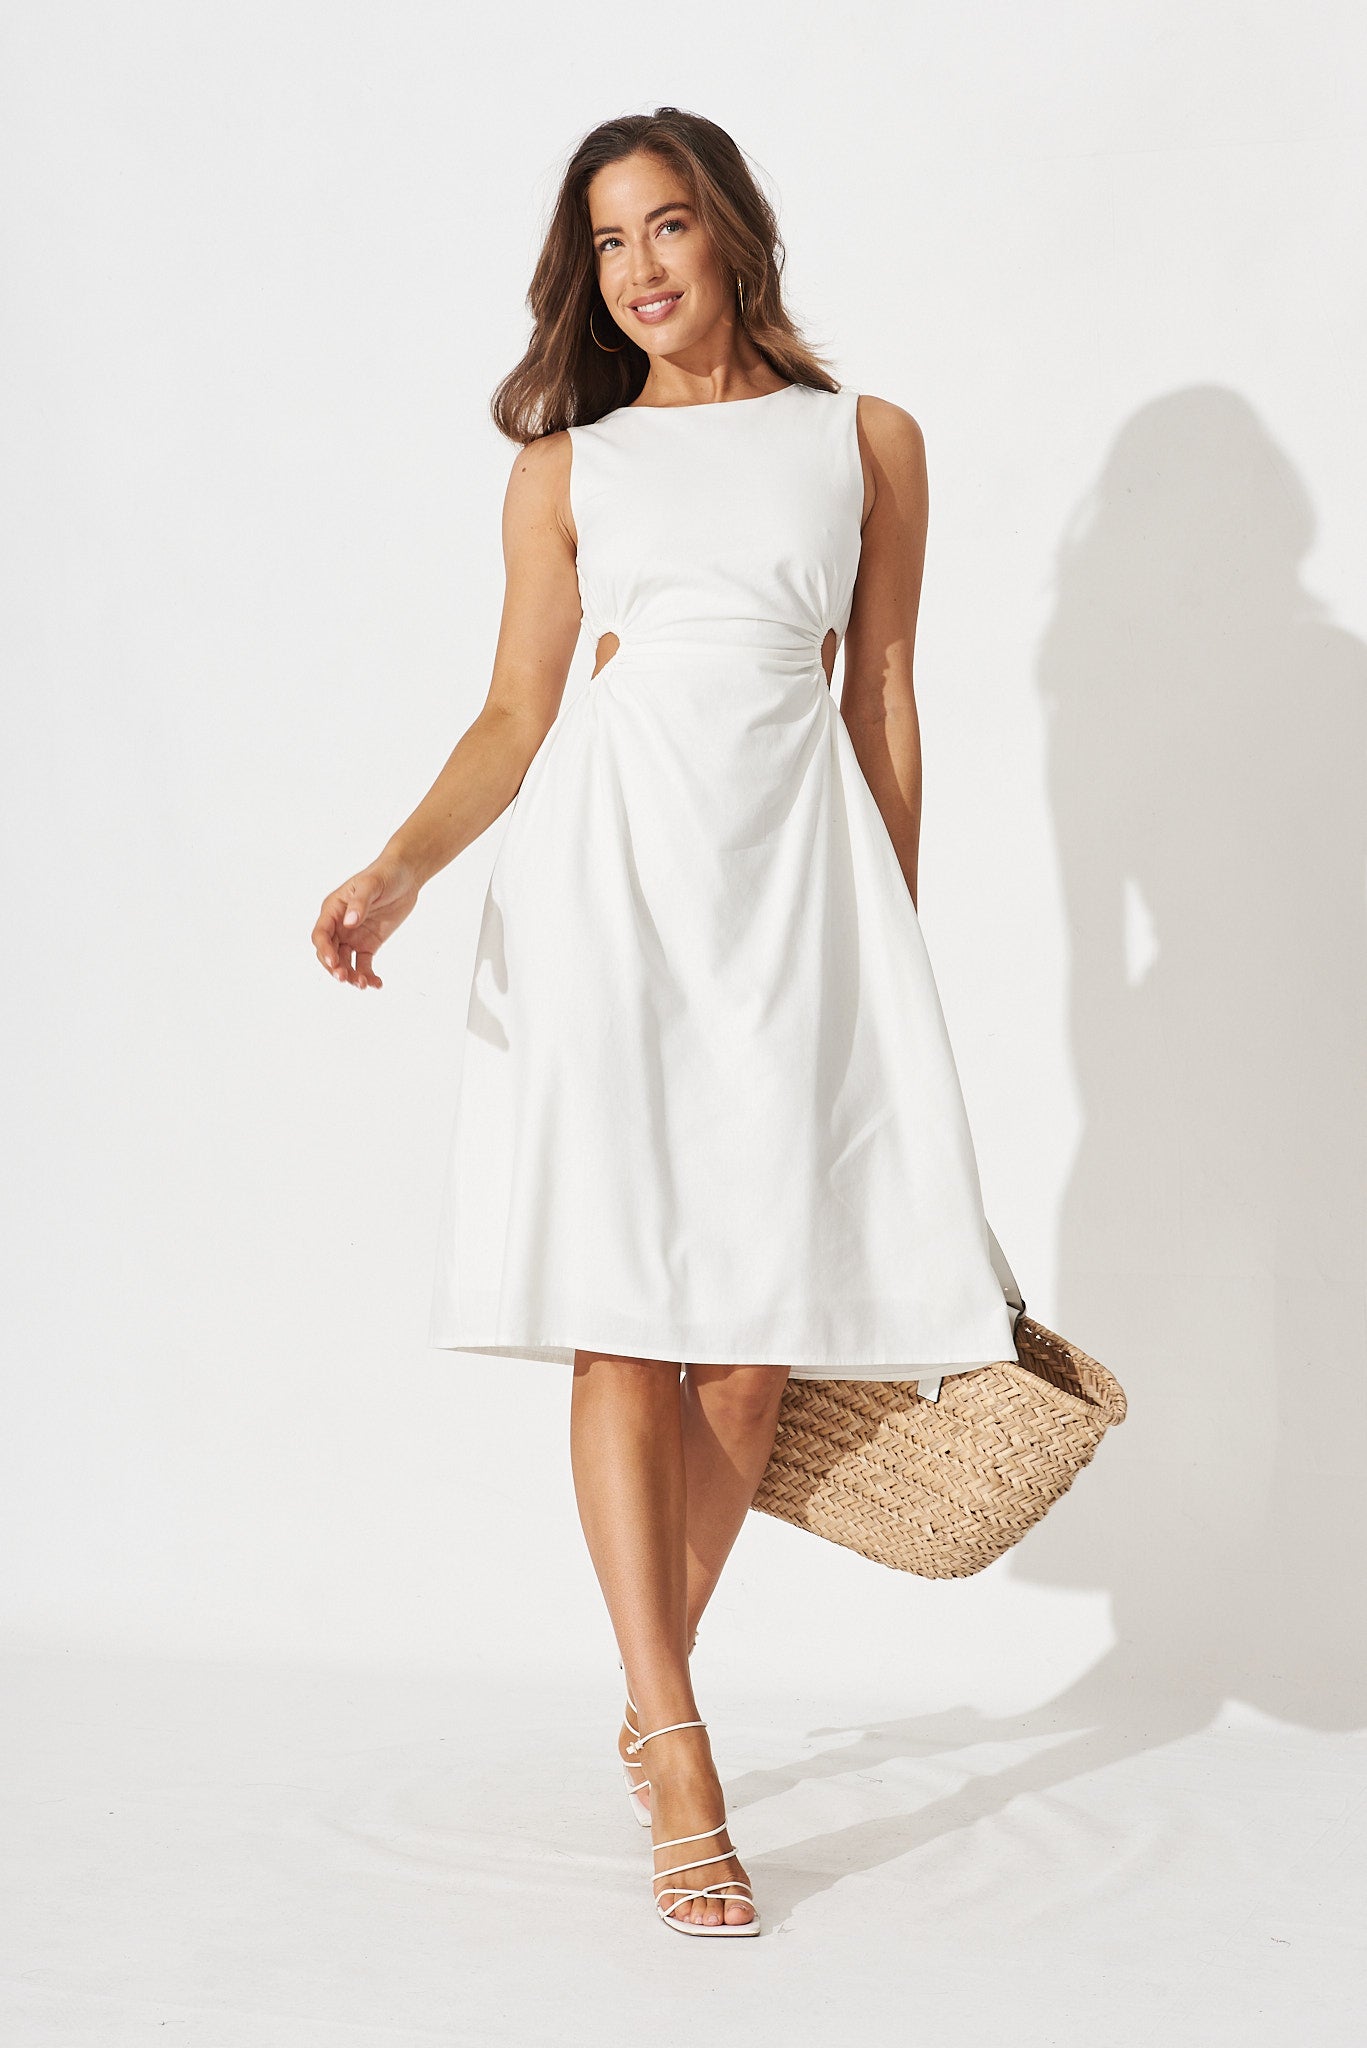 Kourtnie Mid Dress In White Linen Blend - full length